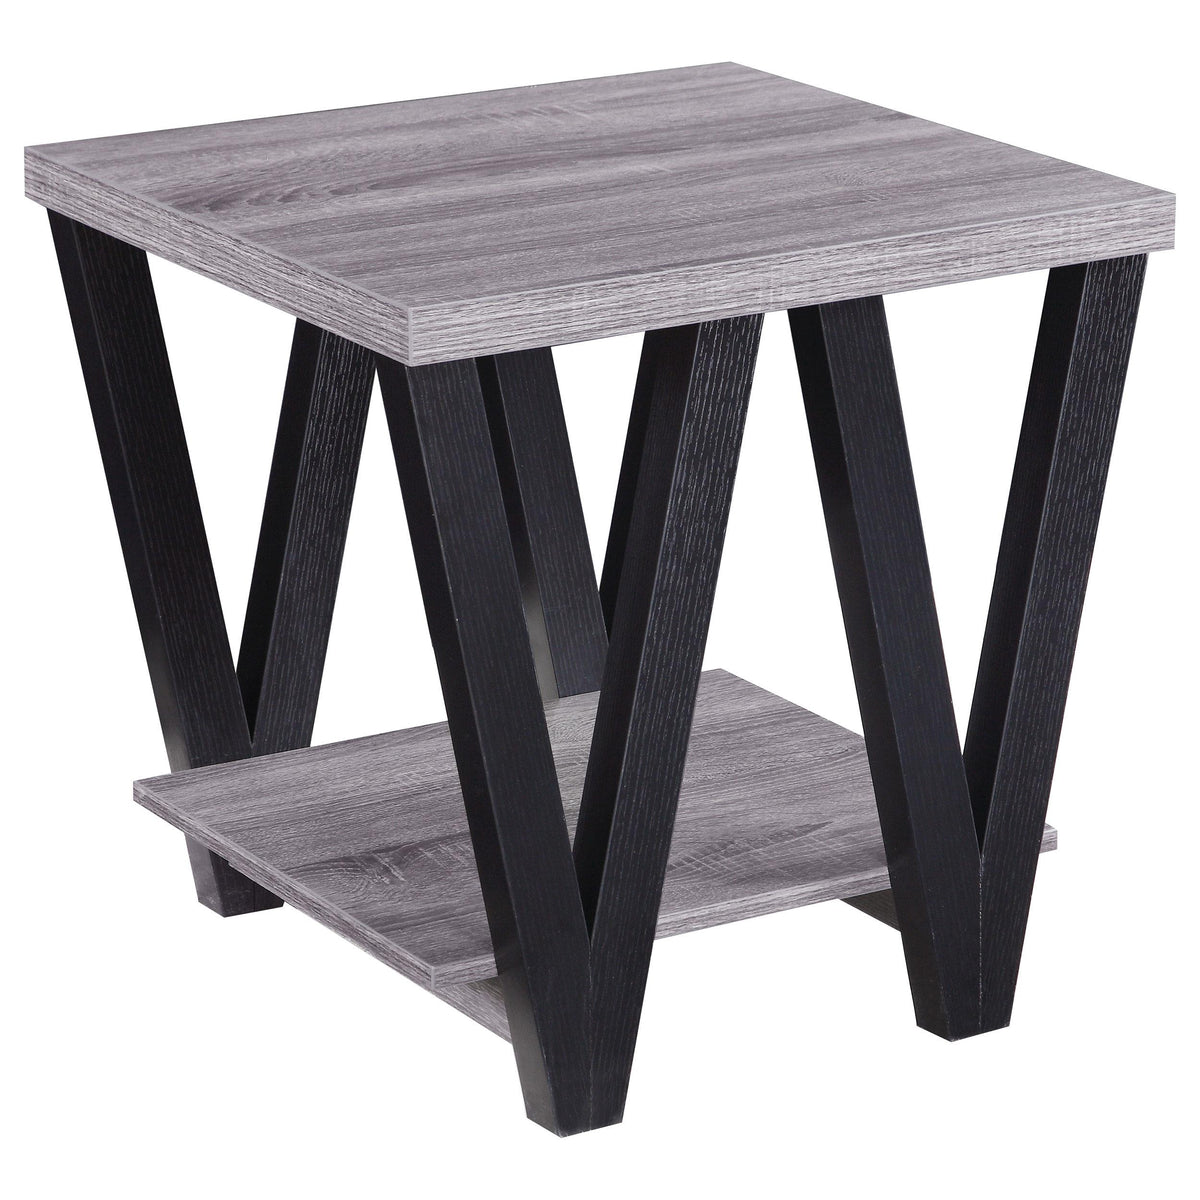 Stevens V-shaped End Table Black and Antique Grey  Las Vegas Furniture Stores